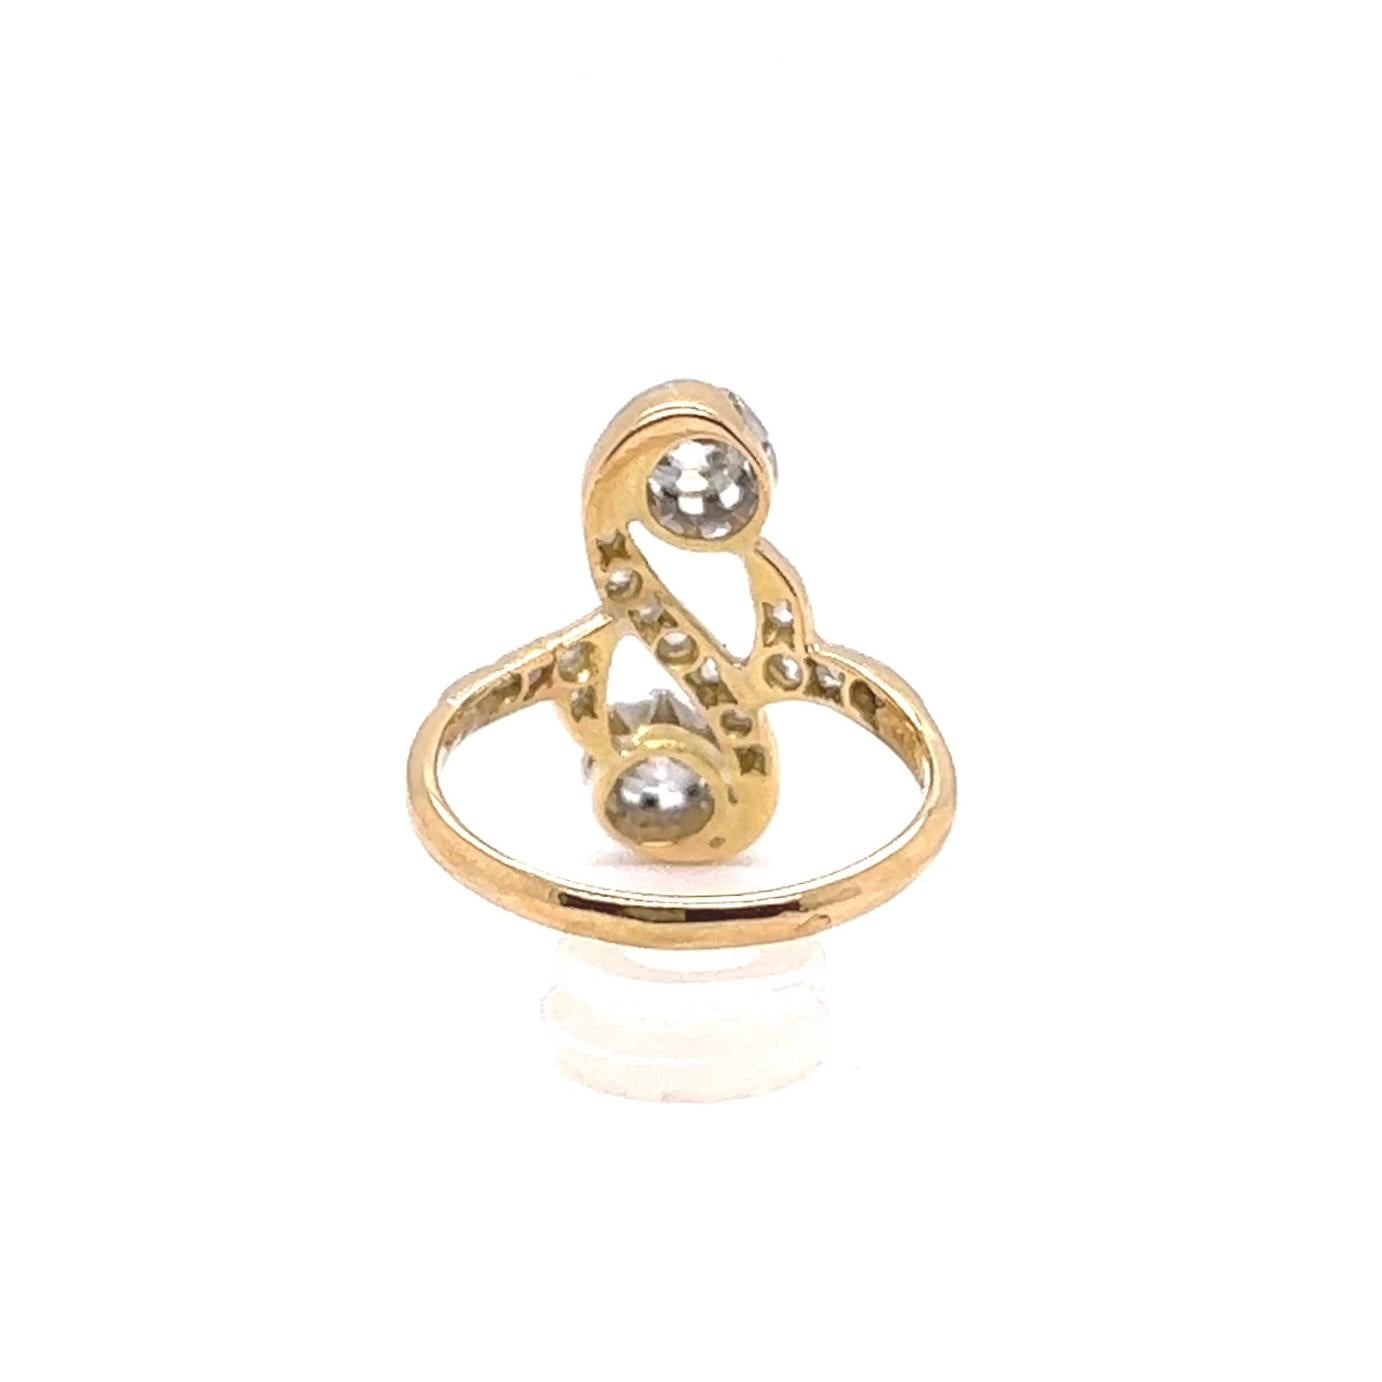 Antique French Belle Époque Diamond 18 Karat Gold Toi et Moi Ring 1